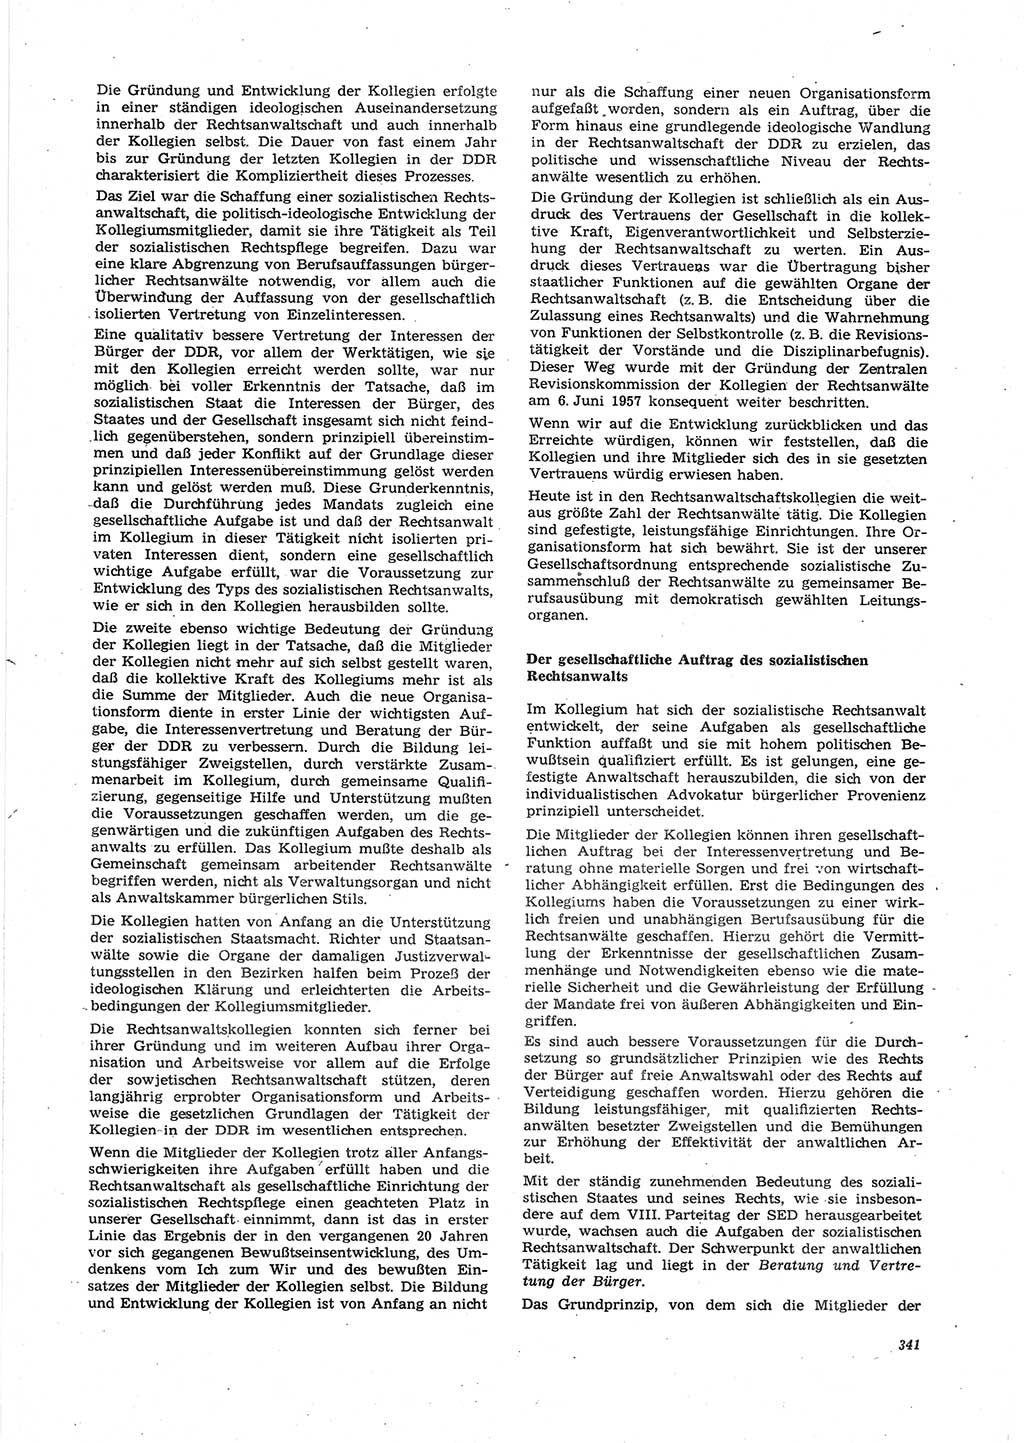 Neue Justiz (NJ), Zeitschrift für Recht und Rechtswissenschaft [Deutsche Demokratische Republik (DDR)], 27. Jahrgang 1973, Seite 341 (NJ DDR 1973, S. 341)